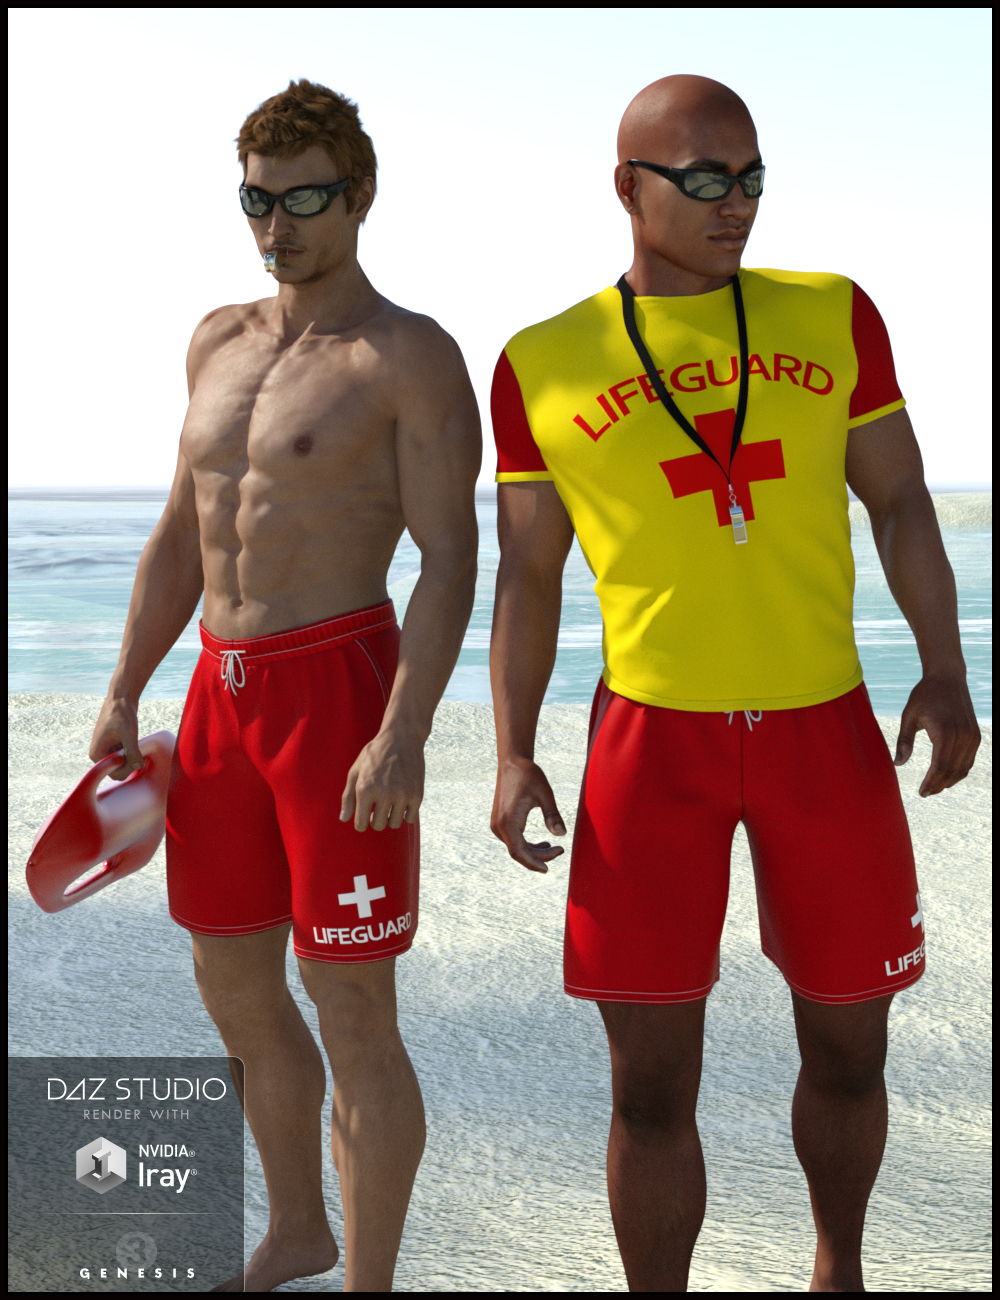 Lifeguard Uniform For Genesis 3 Males Daz 3d